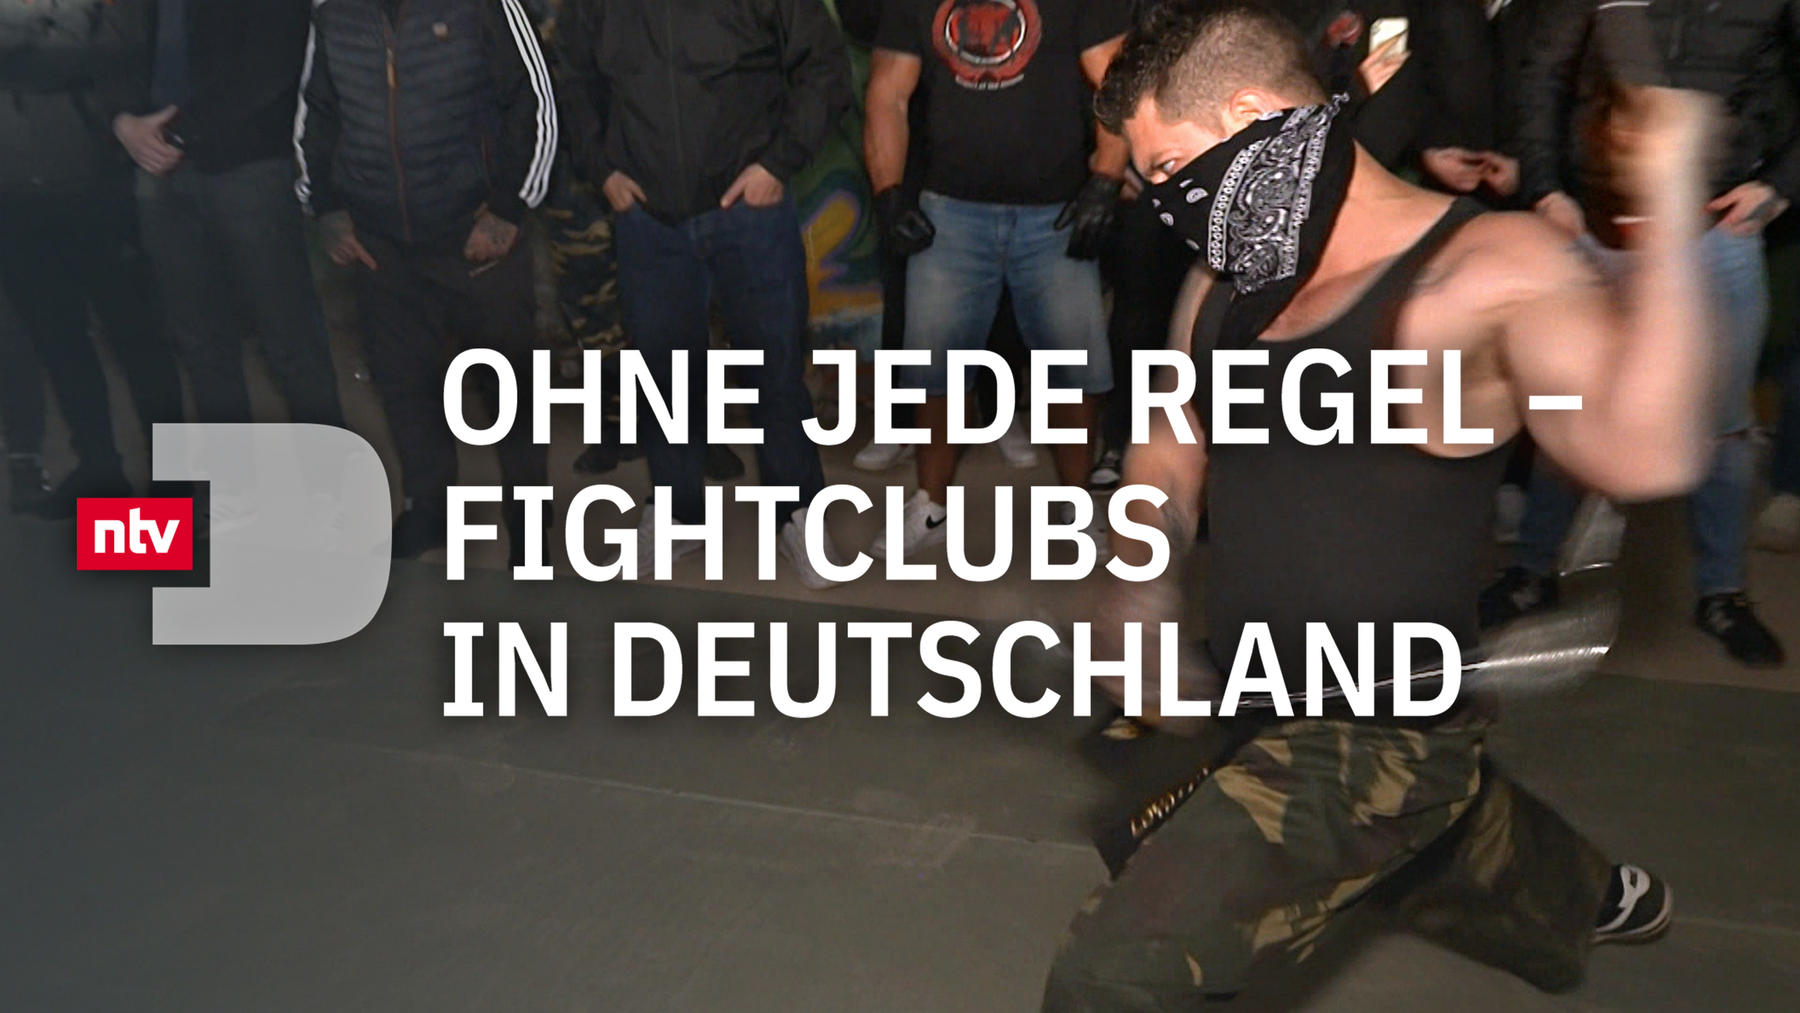 Ohne jede Regel - Fightclubs in Deutschland